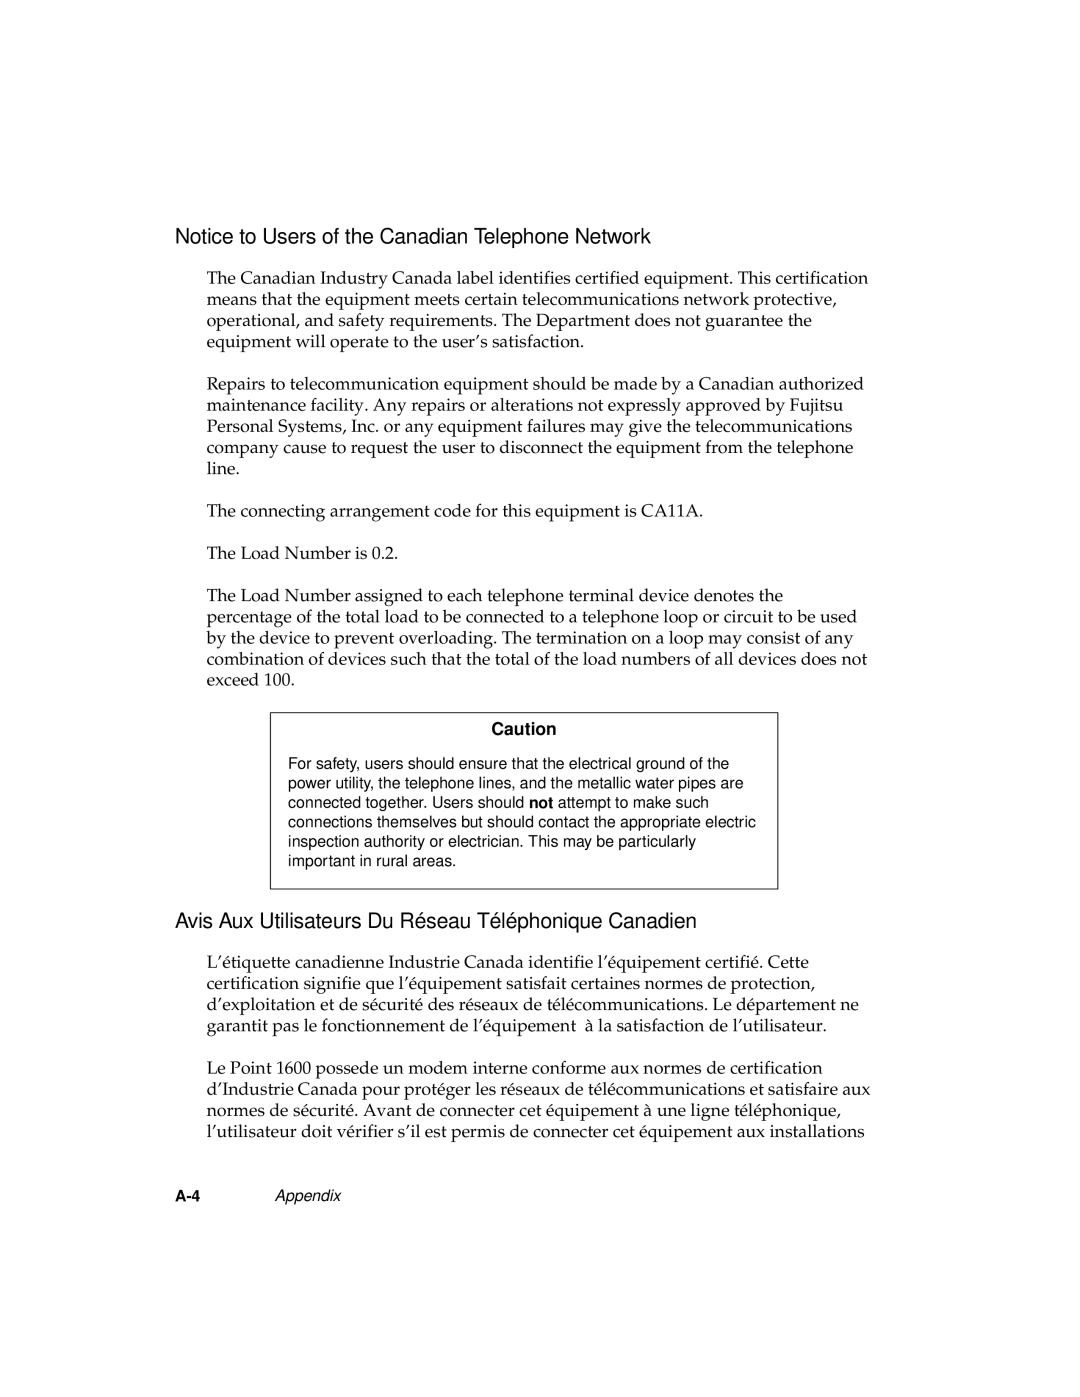 Fujitsu 1600 Notice to Users of the Canadian Telephone Network, Avis Aux Utilisateurs Du Réseau Téléphonique Canadien 